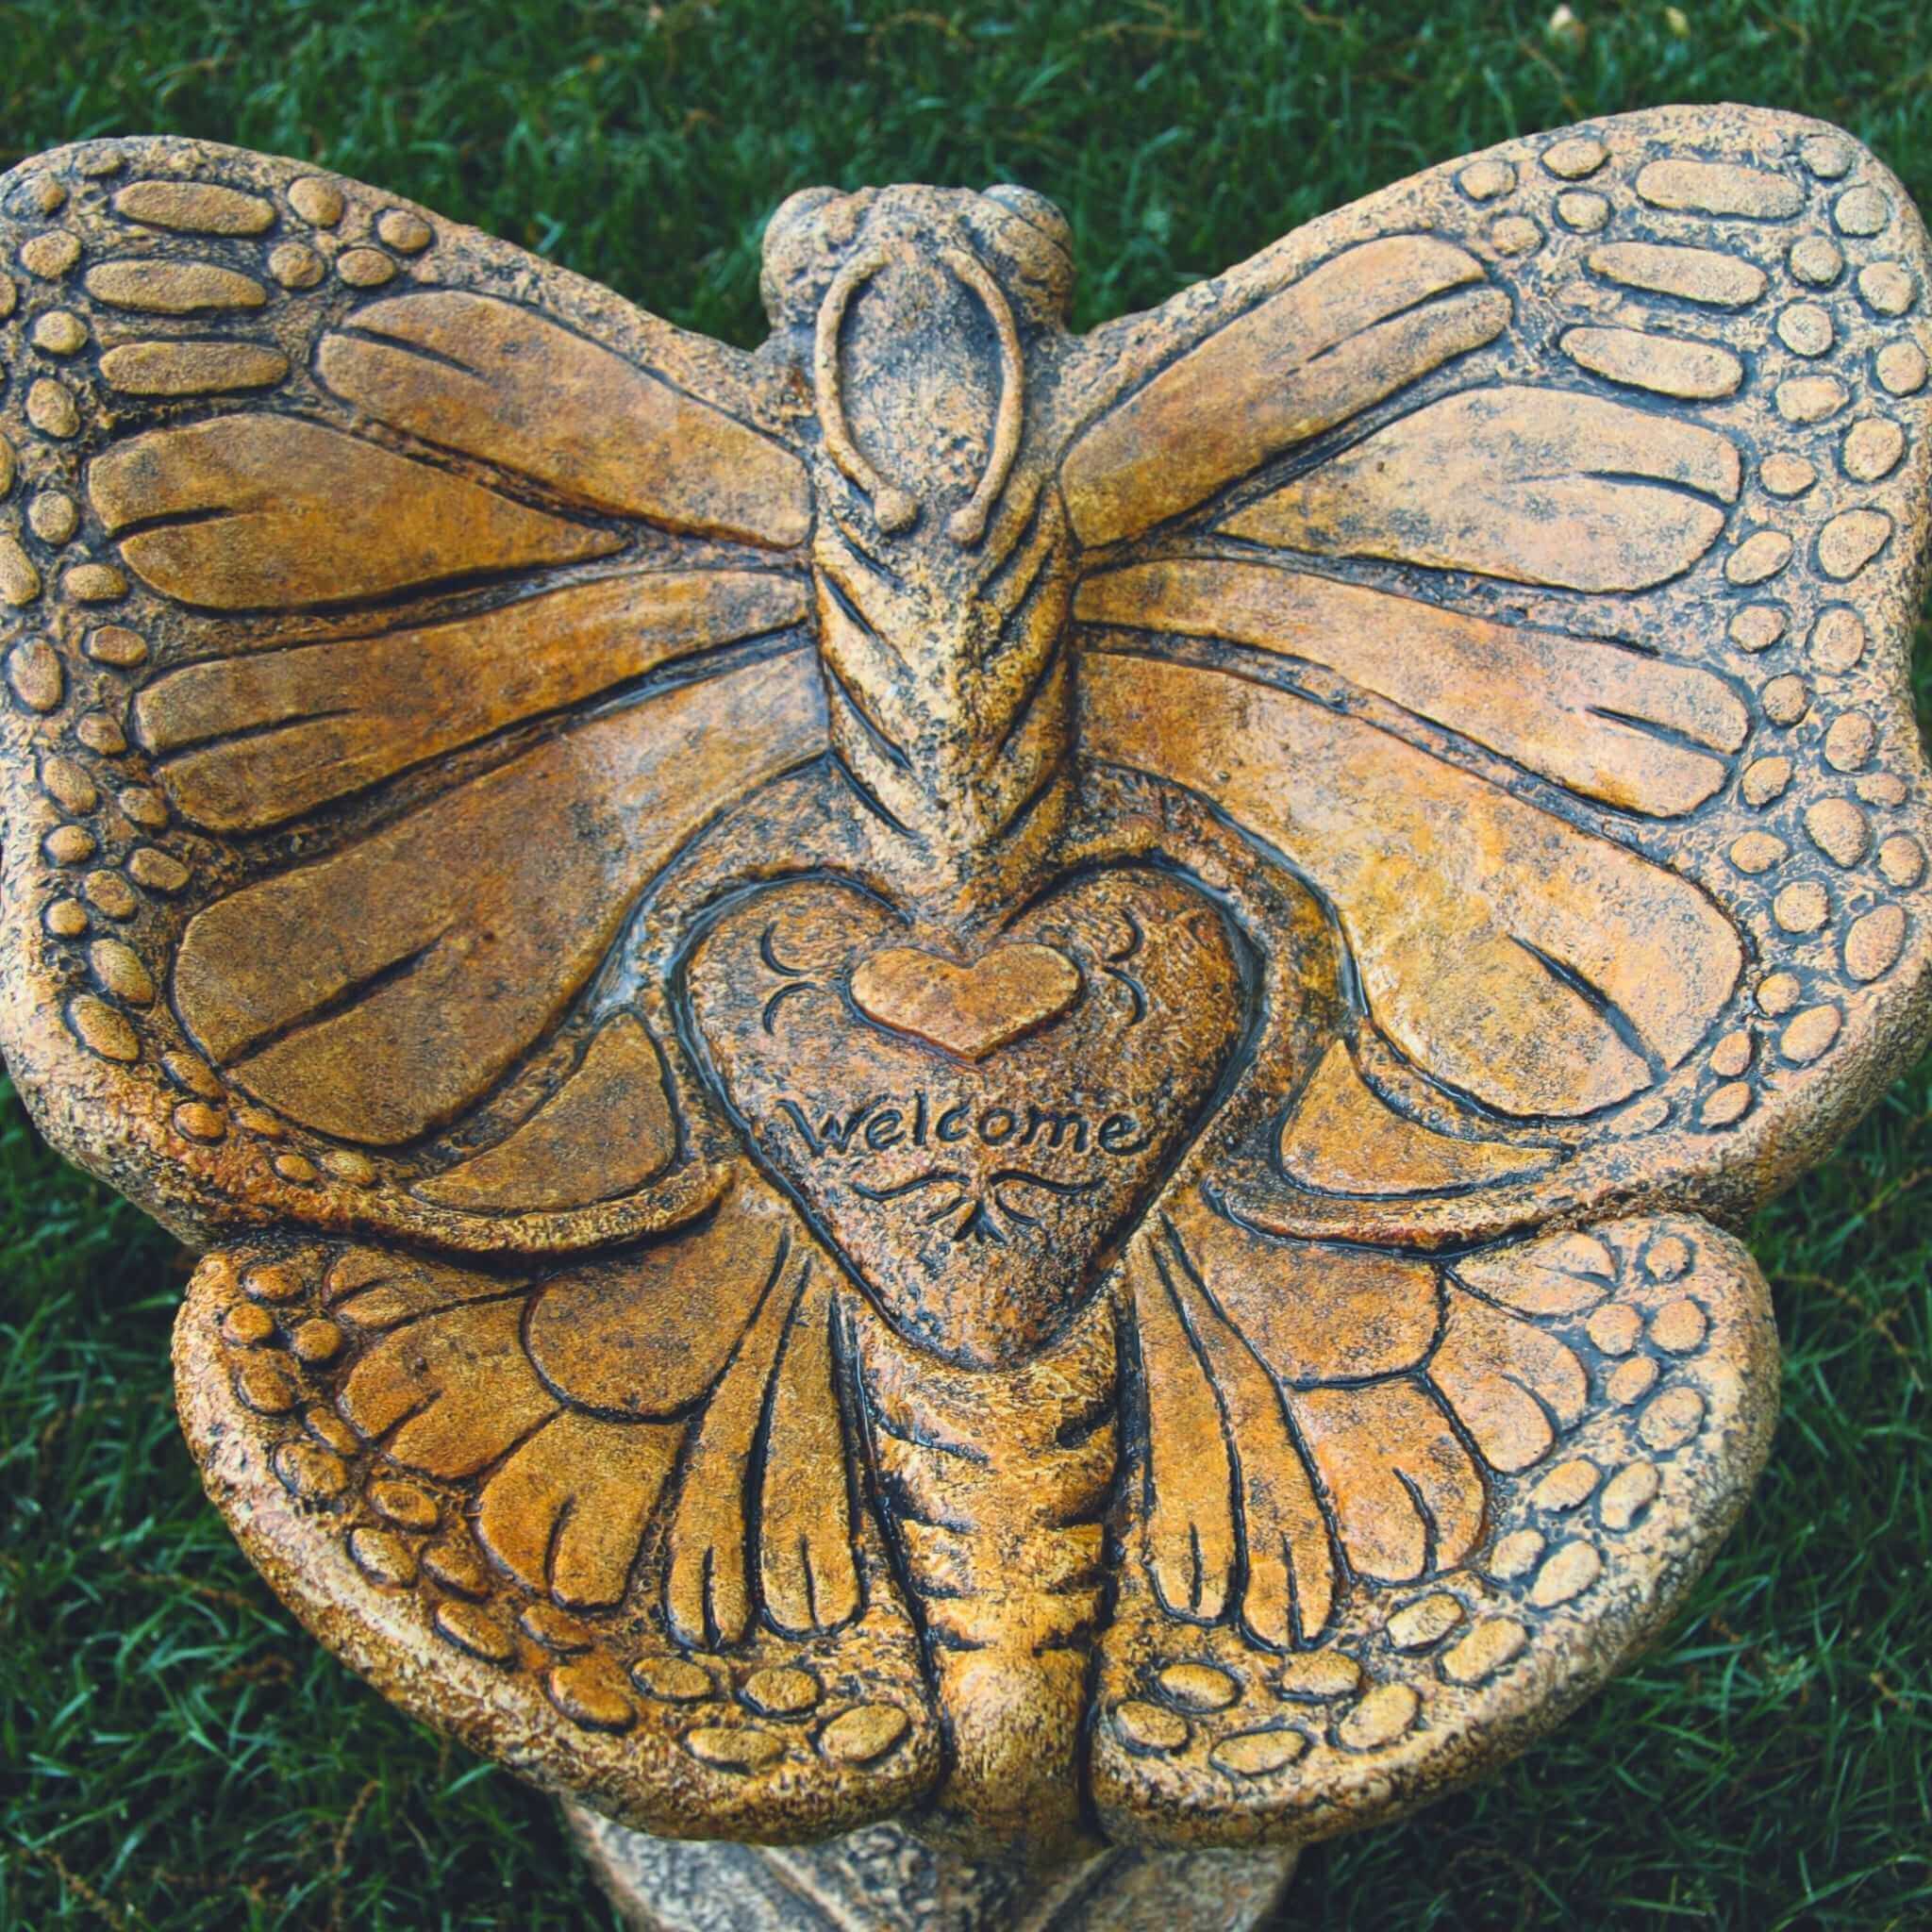 Butterfly 1-Piece Concrete Bird Bath - Massarellis #9743